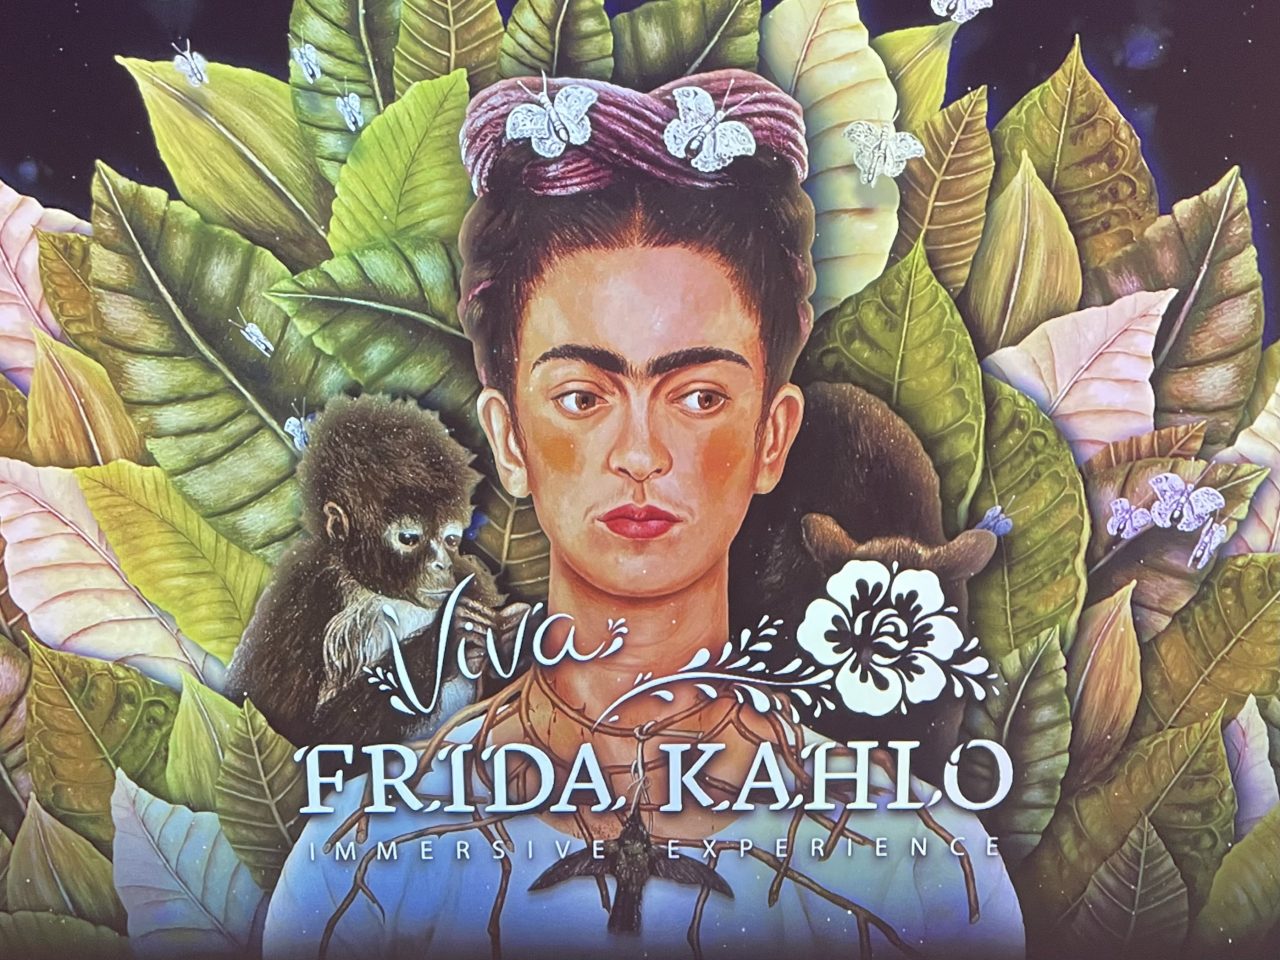 Frida Kahlo - Abbildung mit einem Affen auf jeder Schulter mit Blättern um sich und "Viva Frida Kahlo" - Unterschrift 